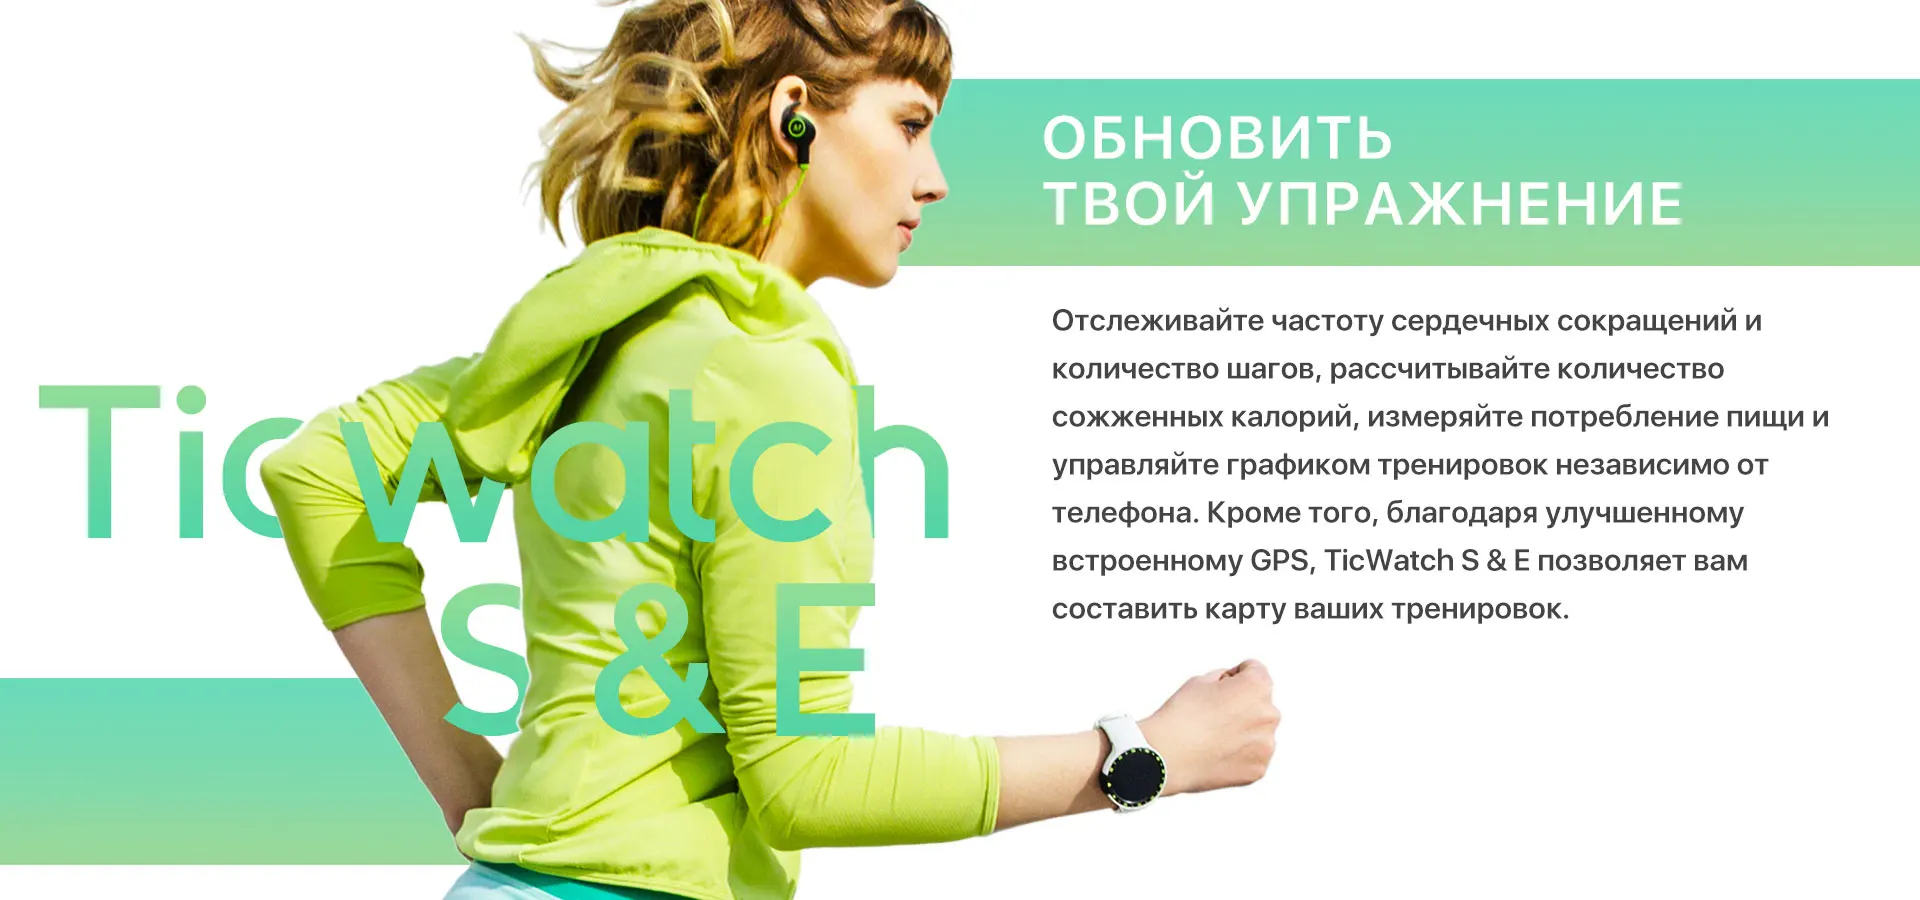 TicWatch S черные Смарт-часы Bluetooth Smartwatch с gps Android и iOS совместимый Google Wear OS IP67 Водонепроницаемый